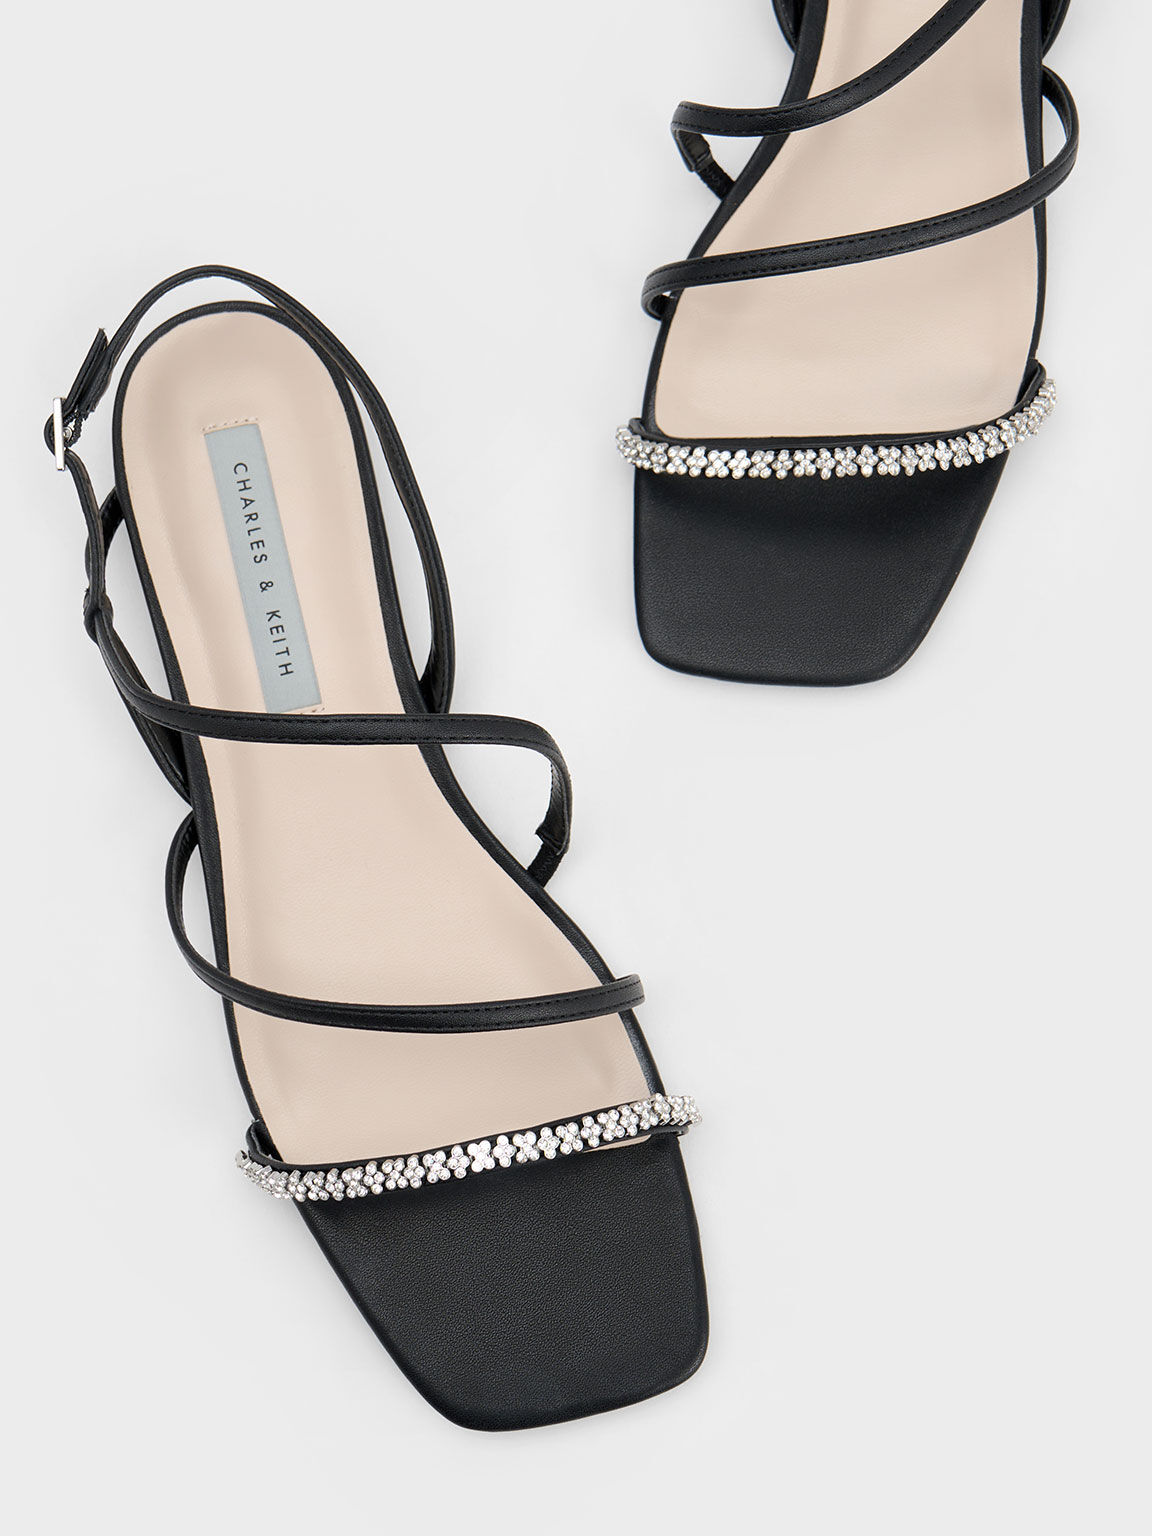 Gem-Encrusted Strappy Slingback Sandals, Black, hi-res